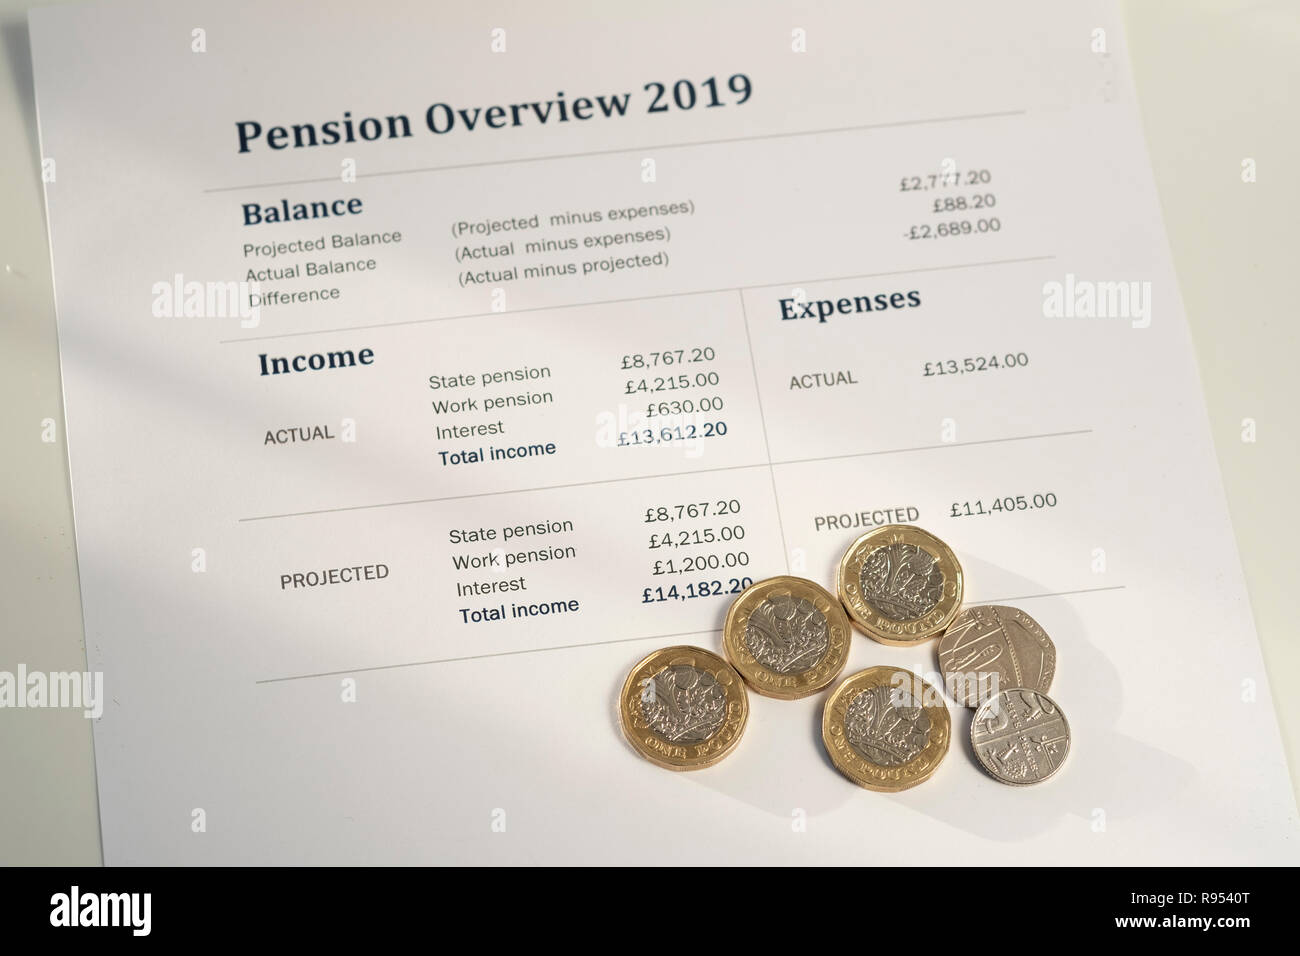 Aumento de pensiones estatales británicos de 4.25 por semana desde abril de 2019 Foto de stock